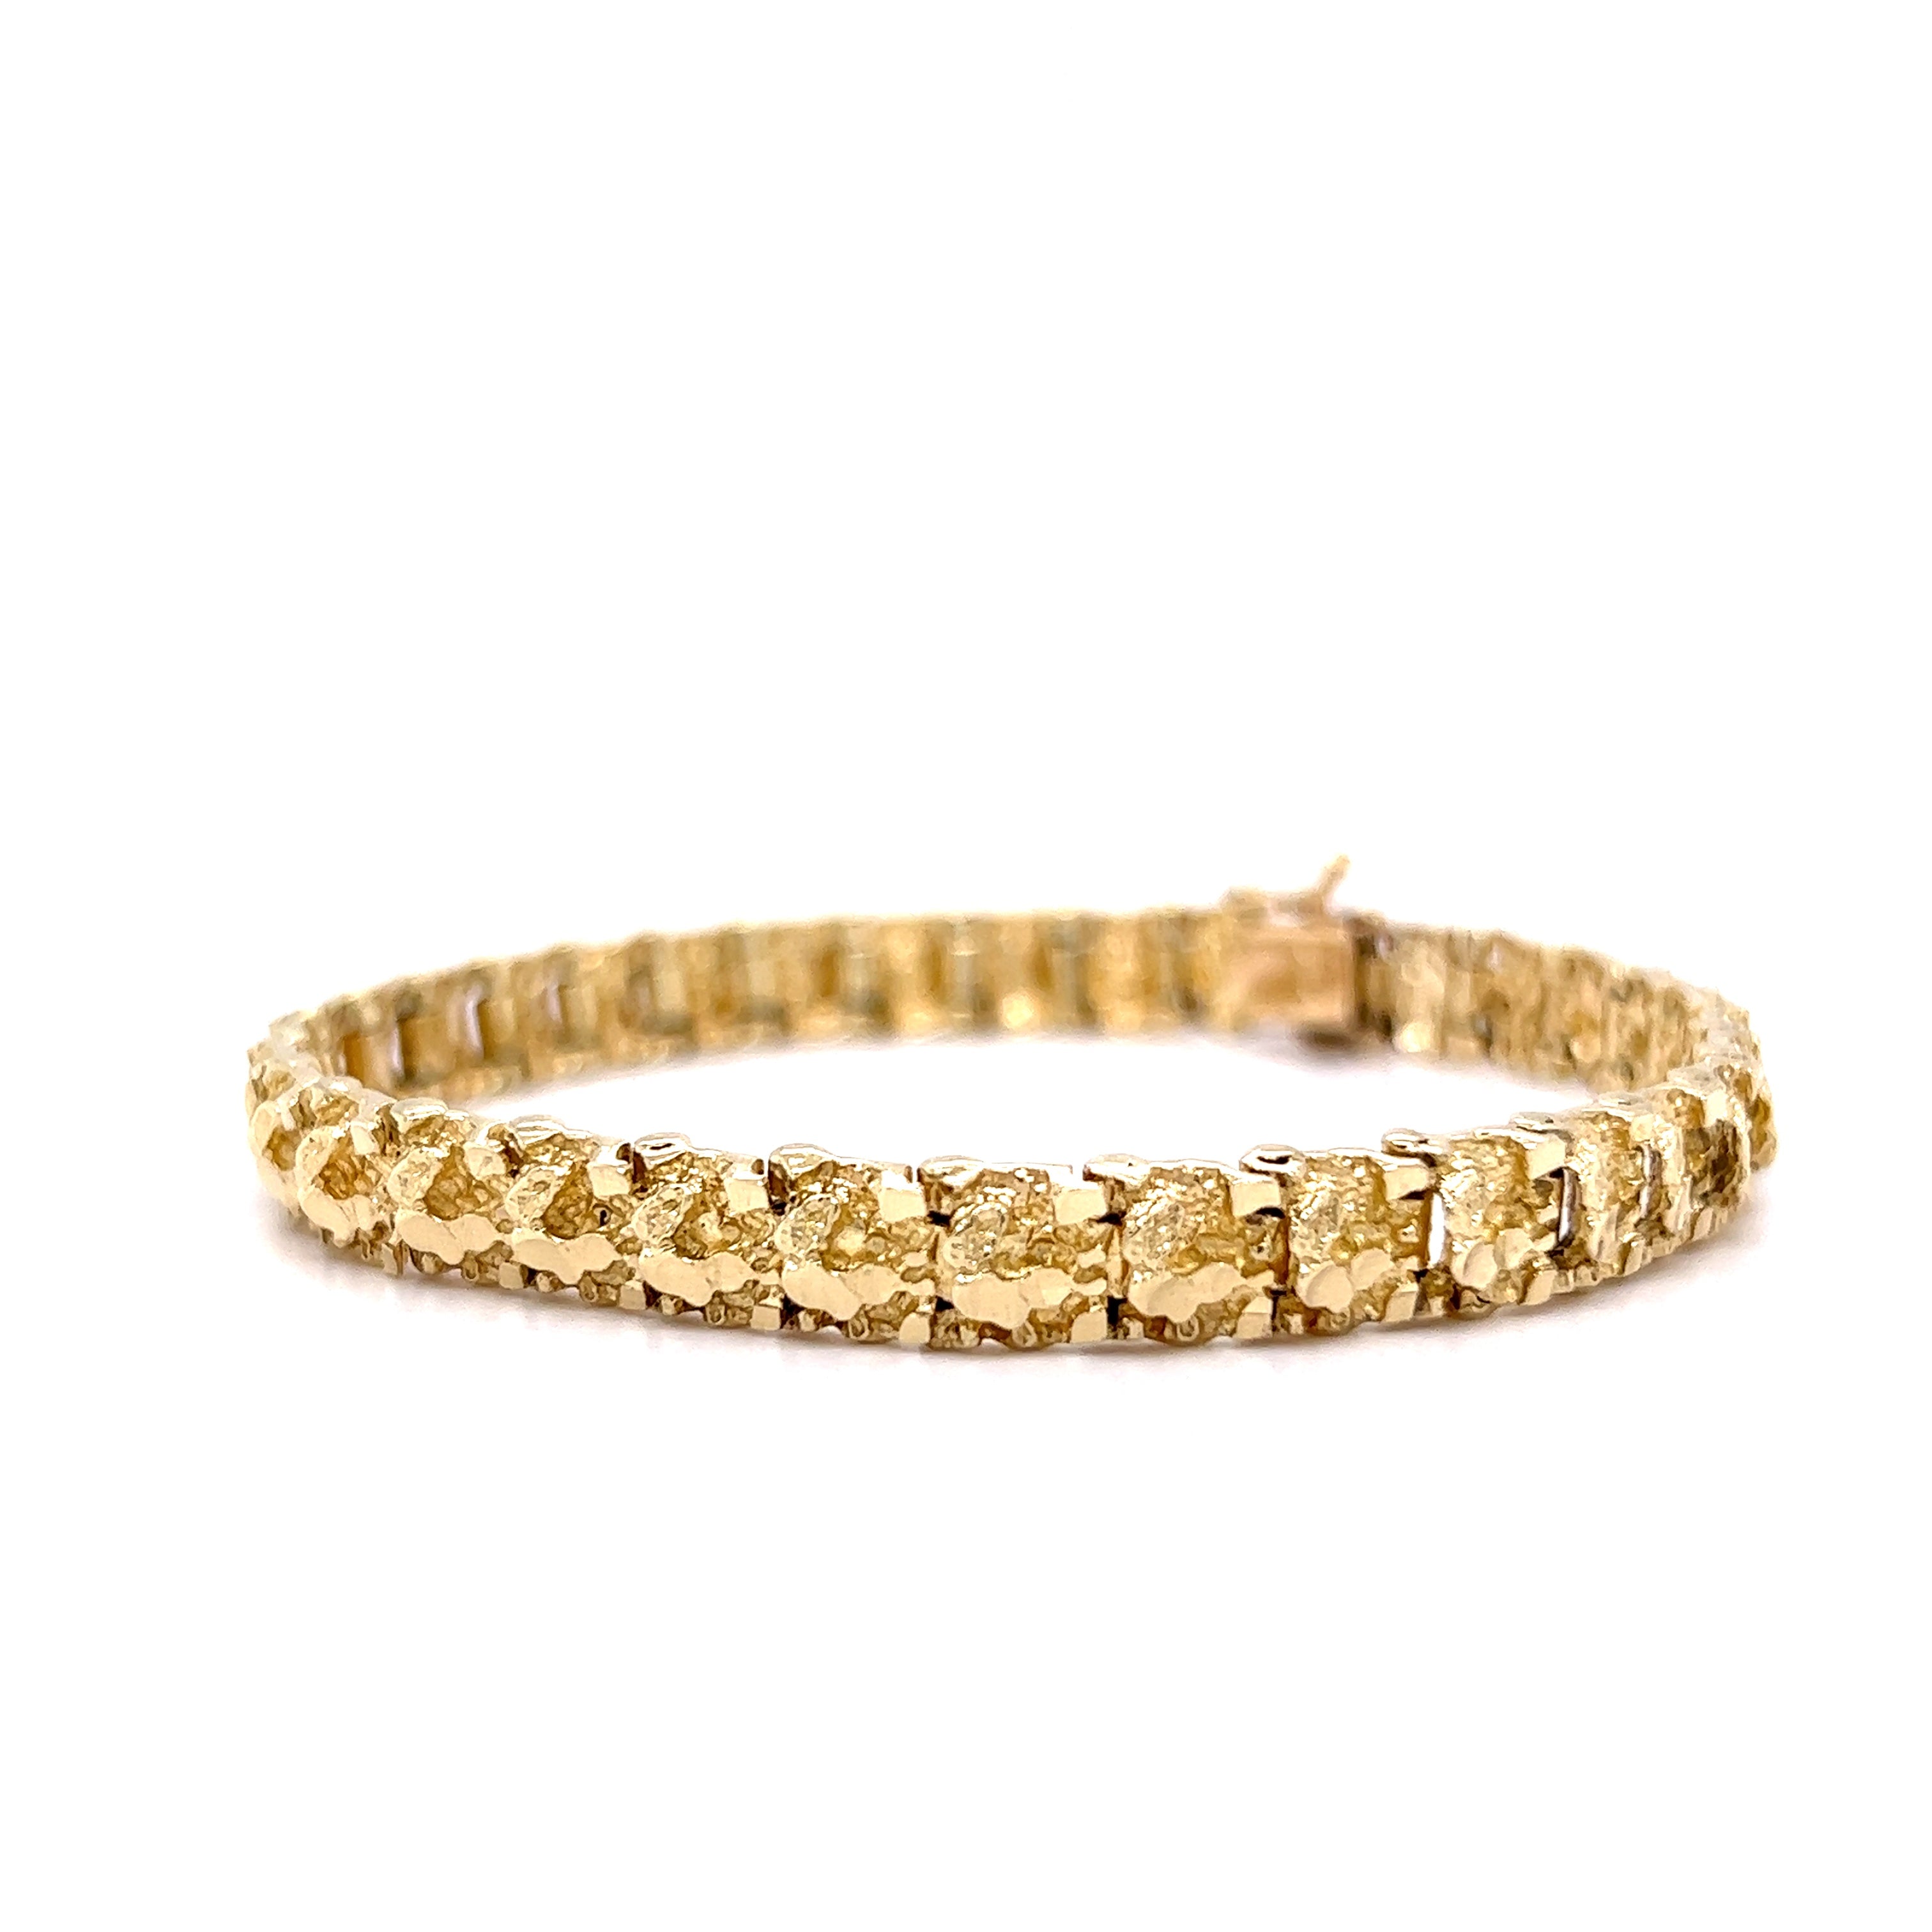 Cuban Link 7mm|unisex Cubic Zirconia Tennis Bracelet - Gold Color 1 Row  Link Chain